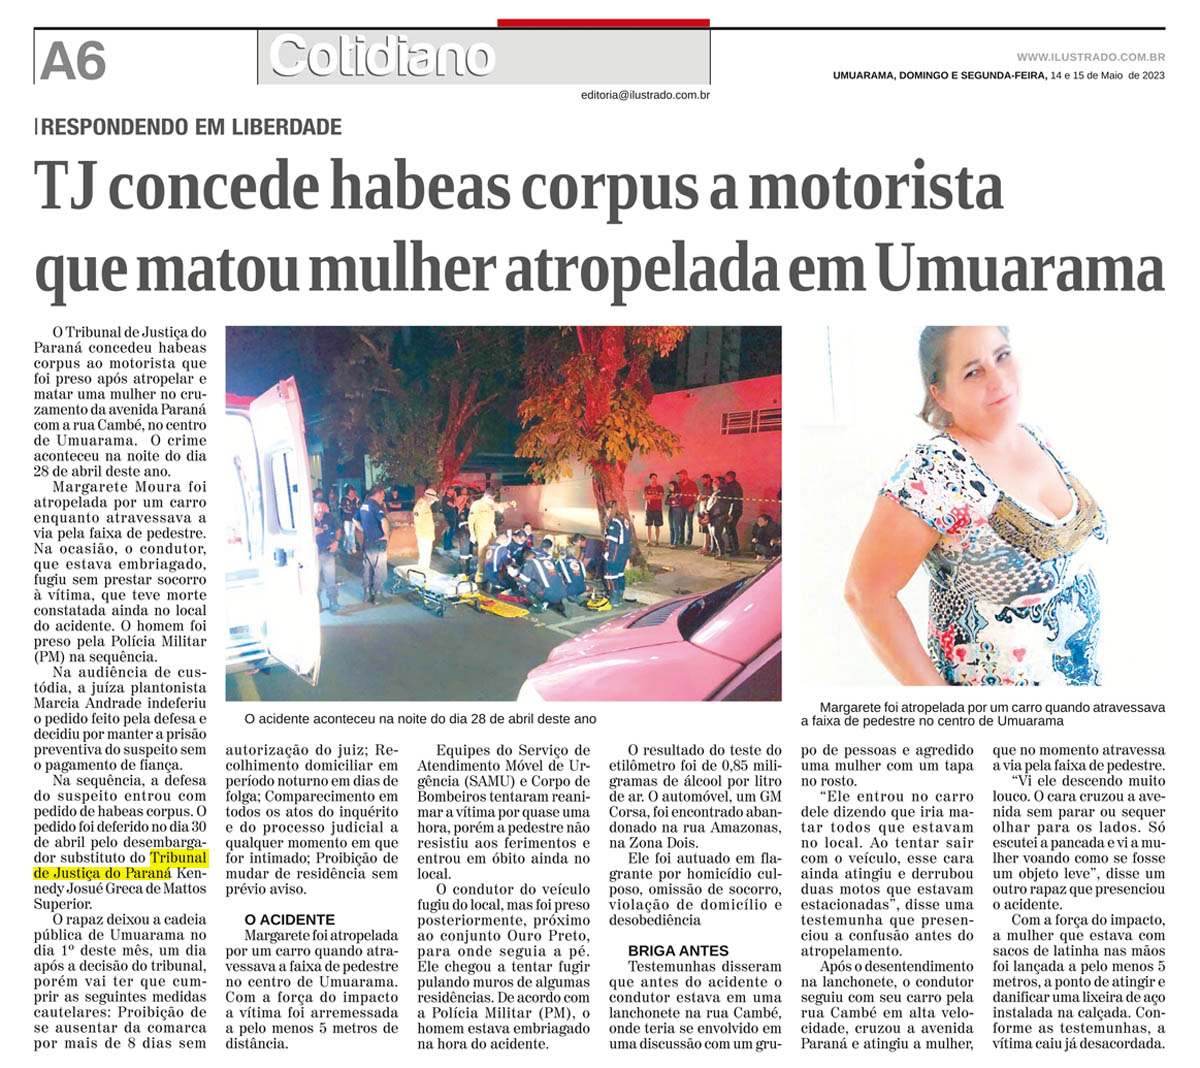 TJ concede habeas corpus a motorista que matou mulher atropelada em Umuarama - image 1